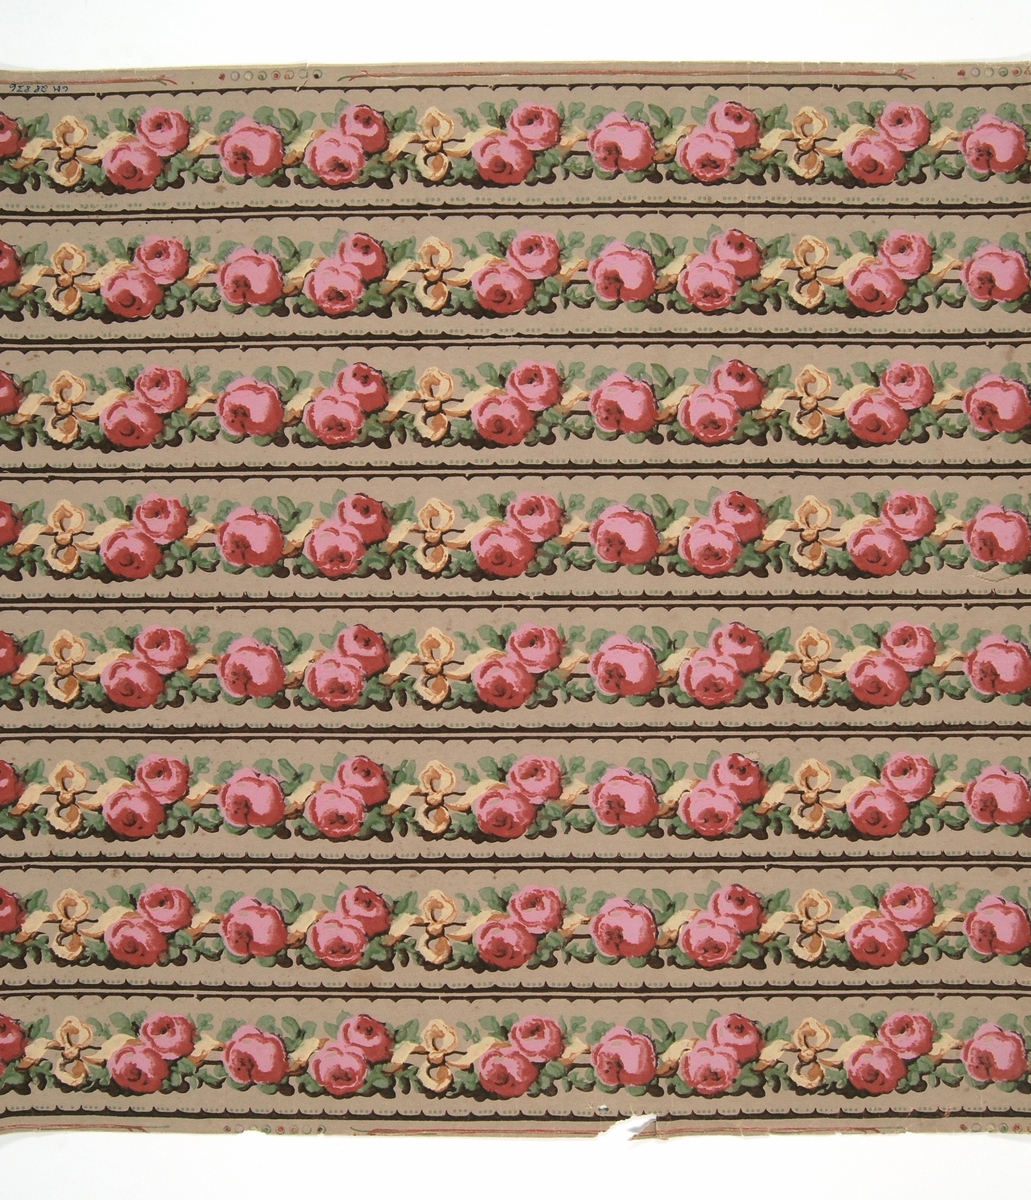 Oskurna tapetbårder med mönster i form av en stav, omlindad med en rosengirland och prydd med bandrosetter. Tryck i rött, rosa, grönt och nyanser av brunt på tryckt s.k. patentbotten. IB